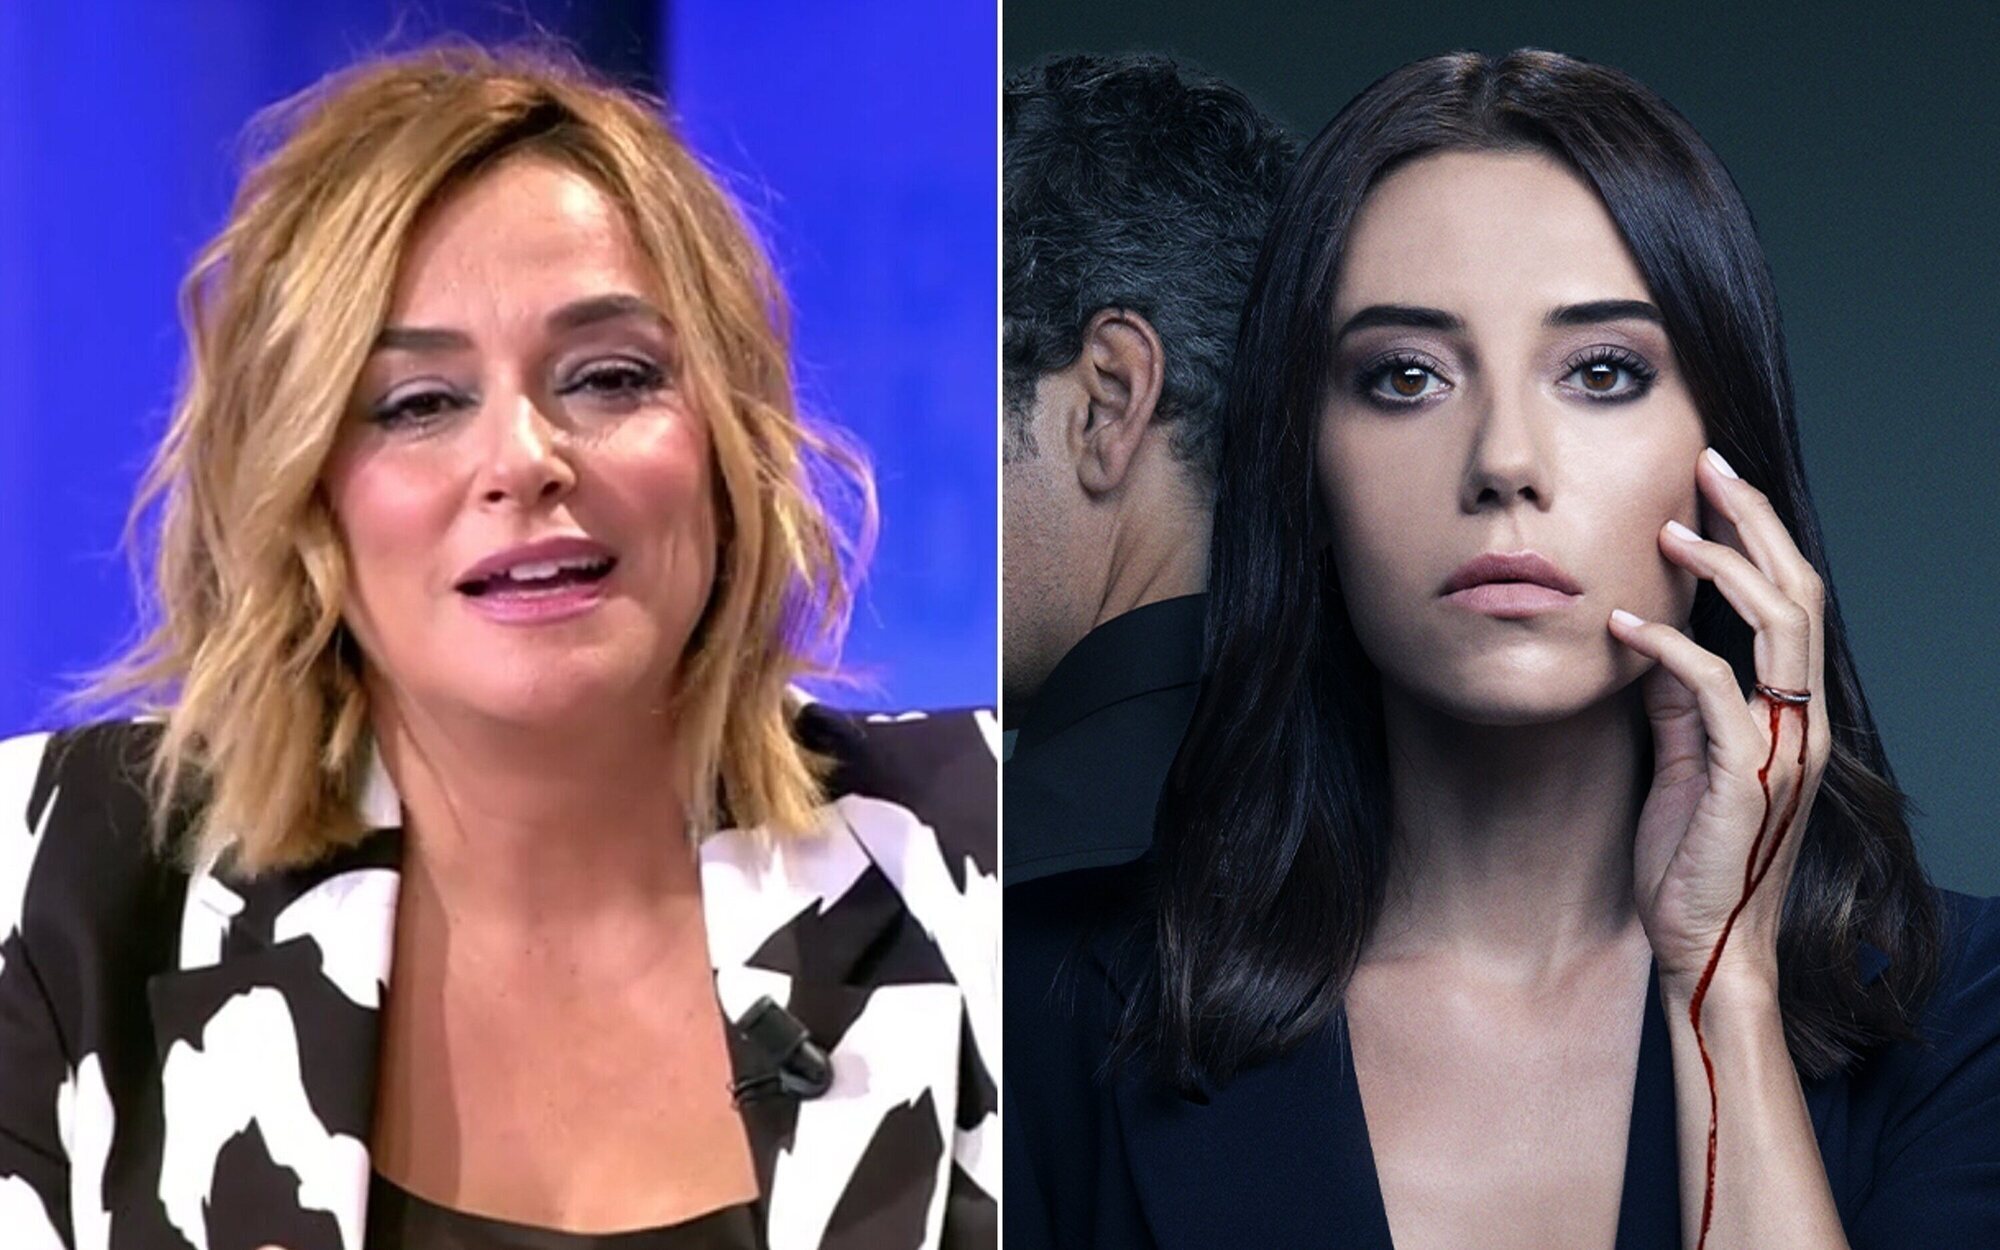 'Viva el verano' regresa a Telecinco para hacer sombra al estreno de 'Infiel' en Antena 3